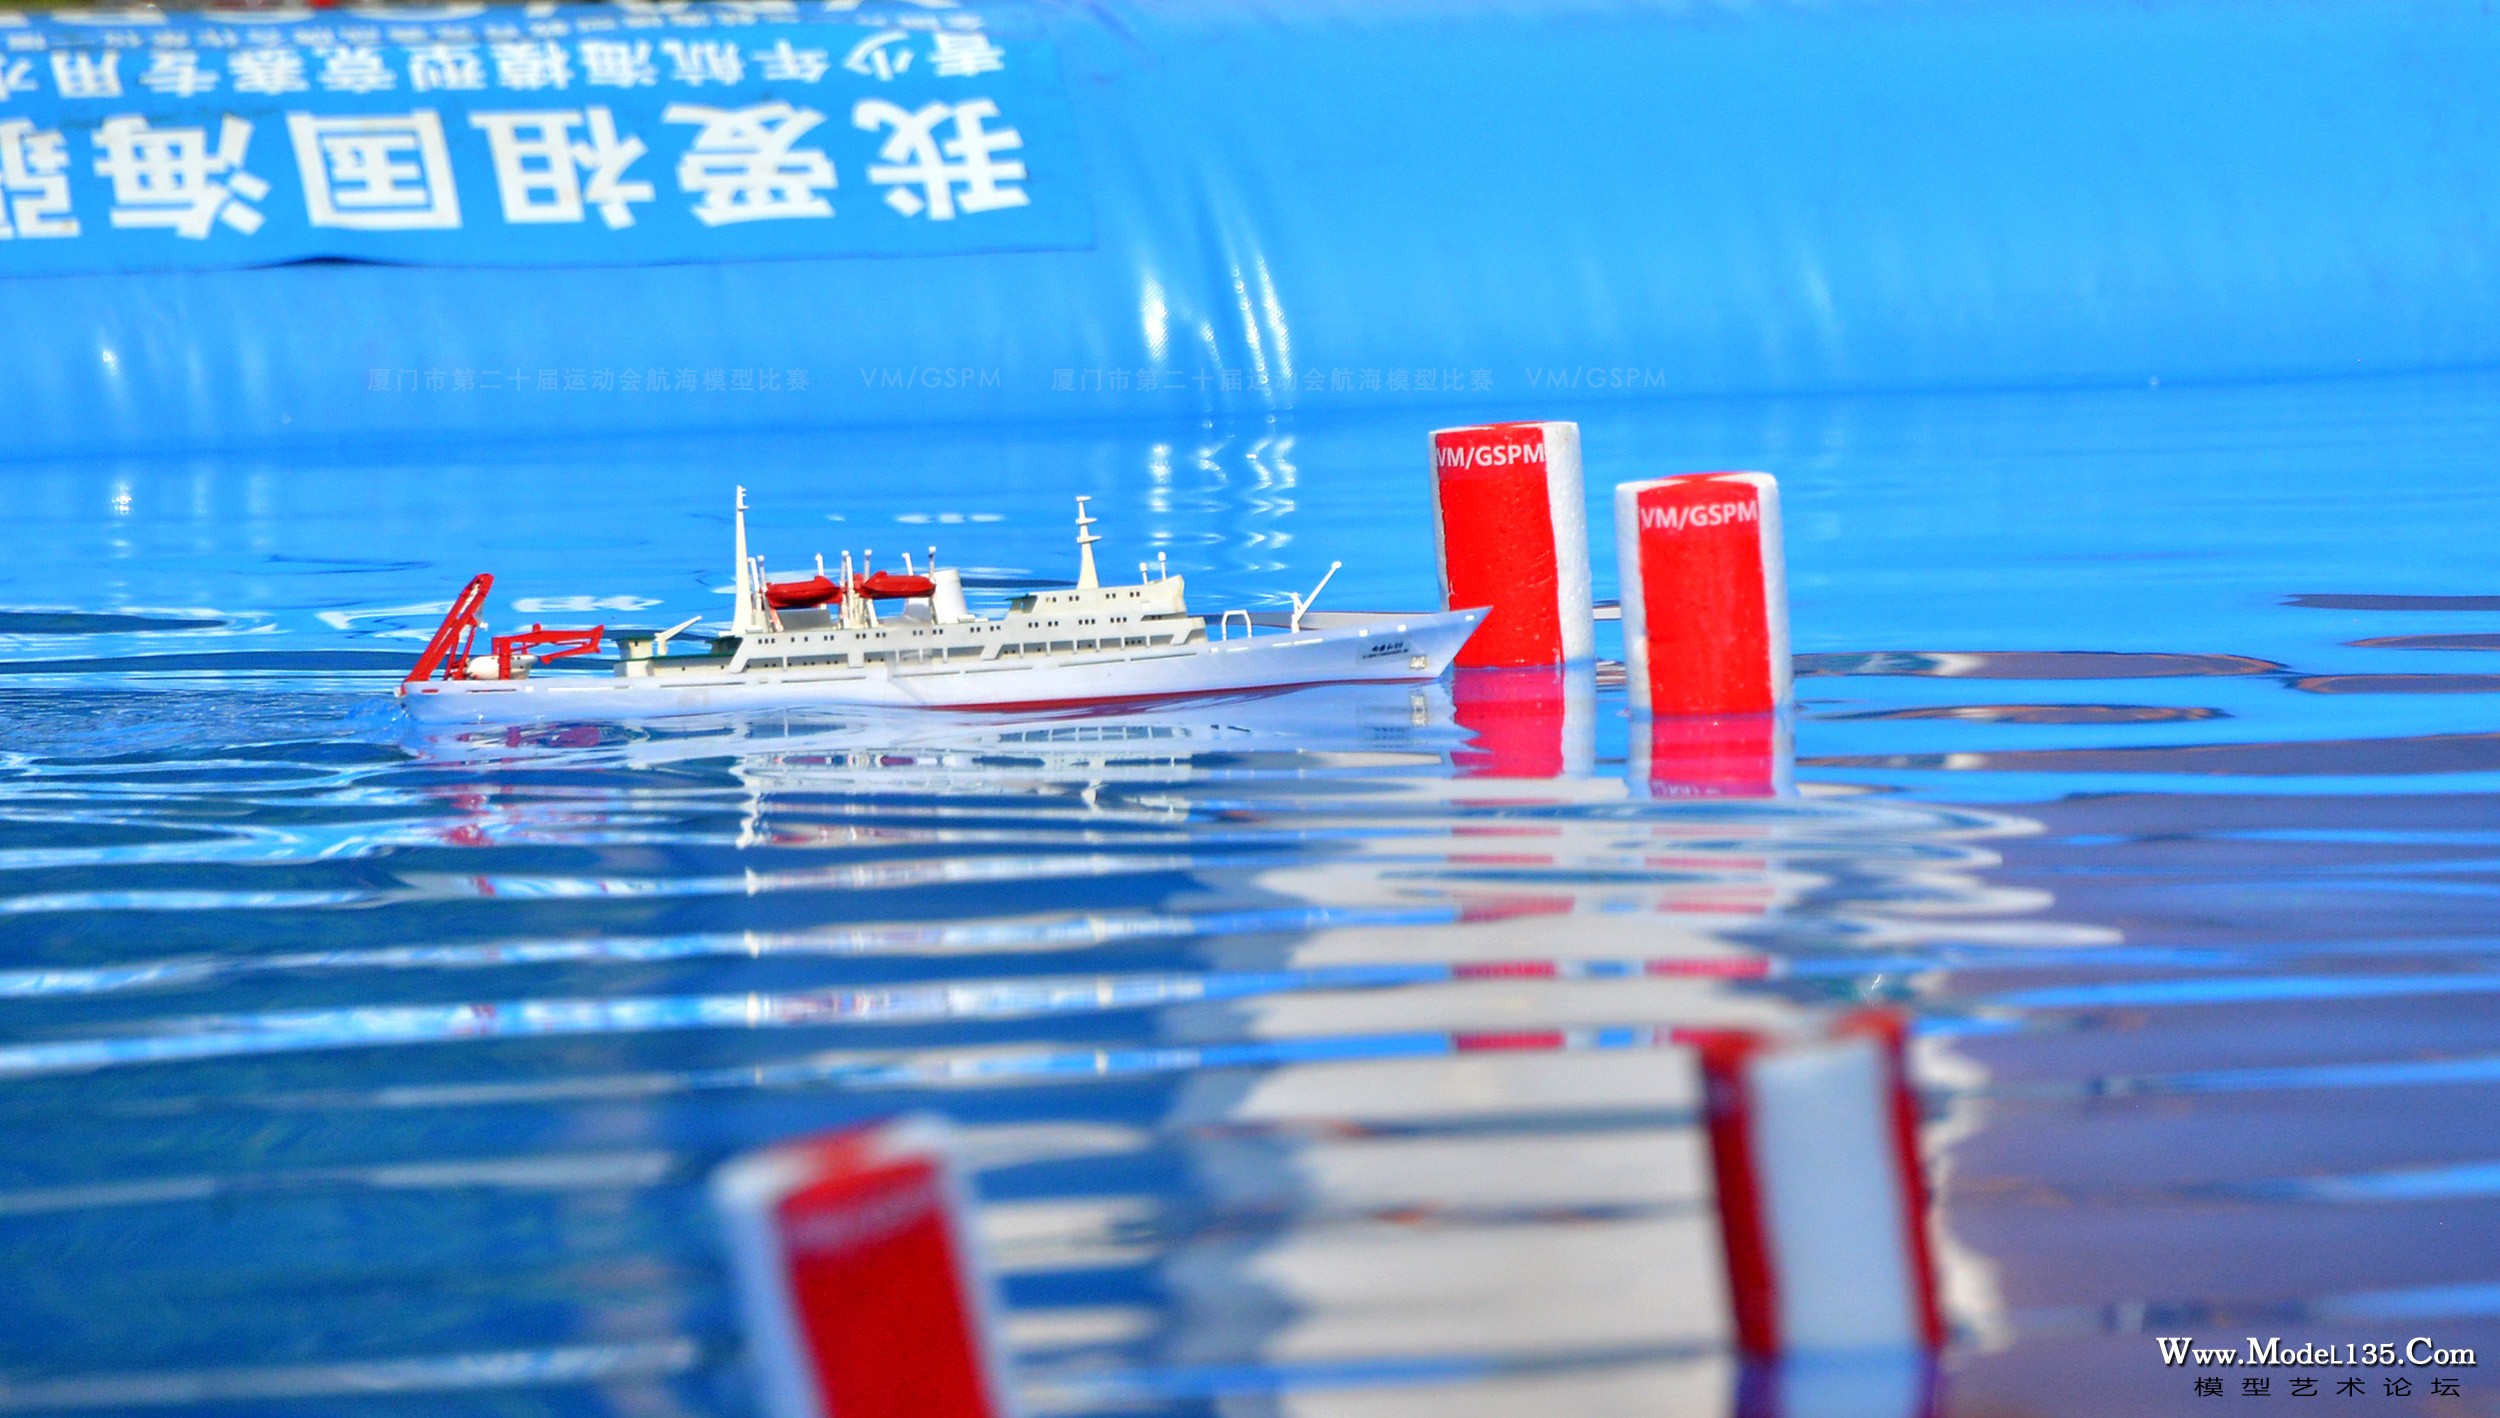 本次市运会启用的大水次航行竞赛专用标